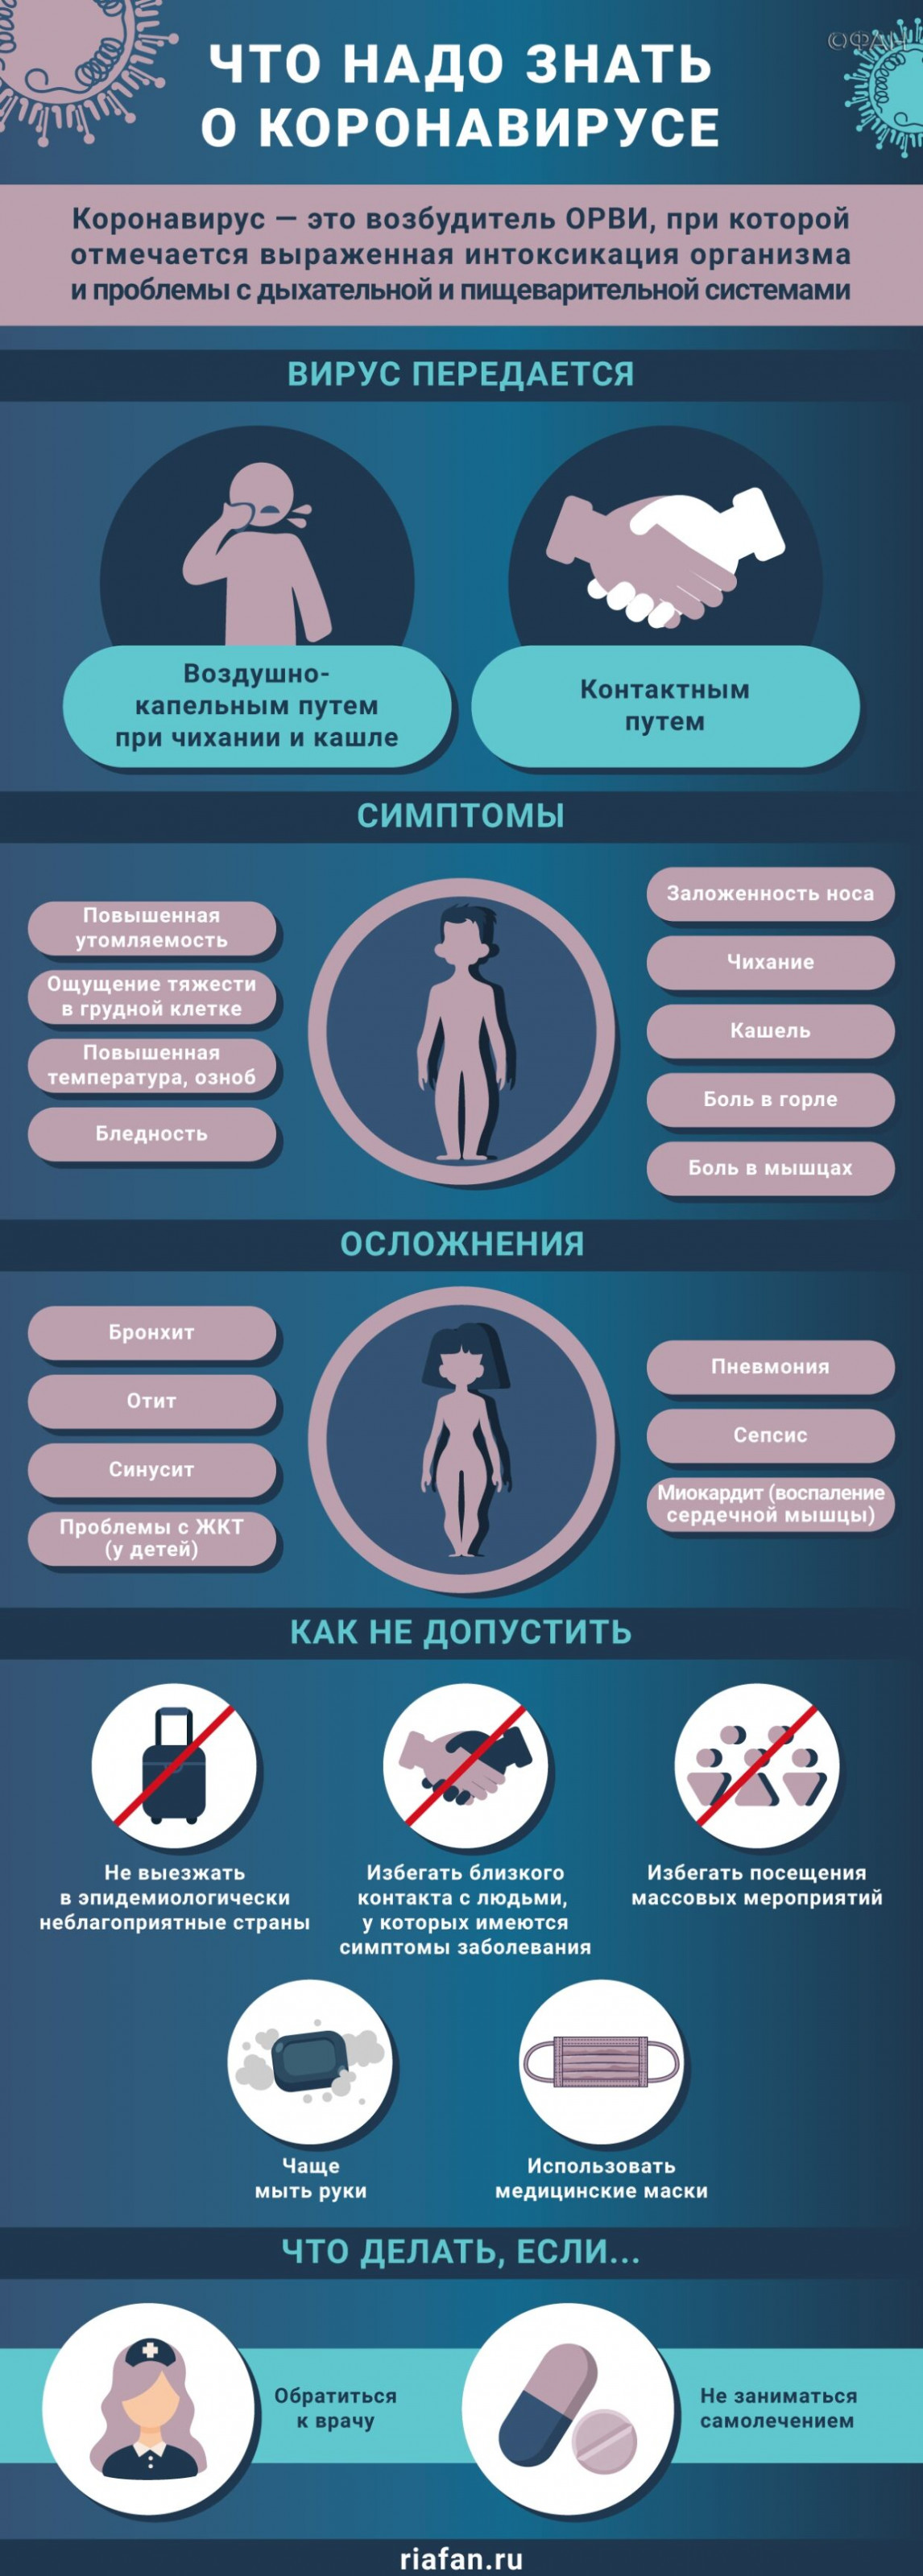 В Петербурге за сутки выявили еще 229 случаев коронавируса